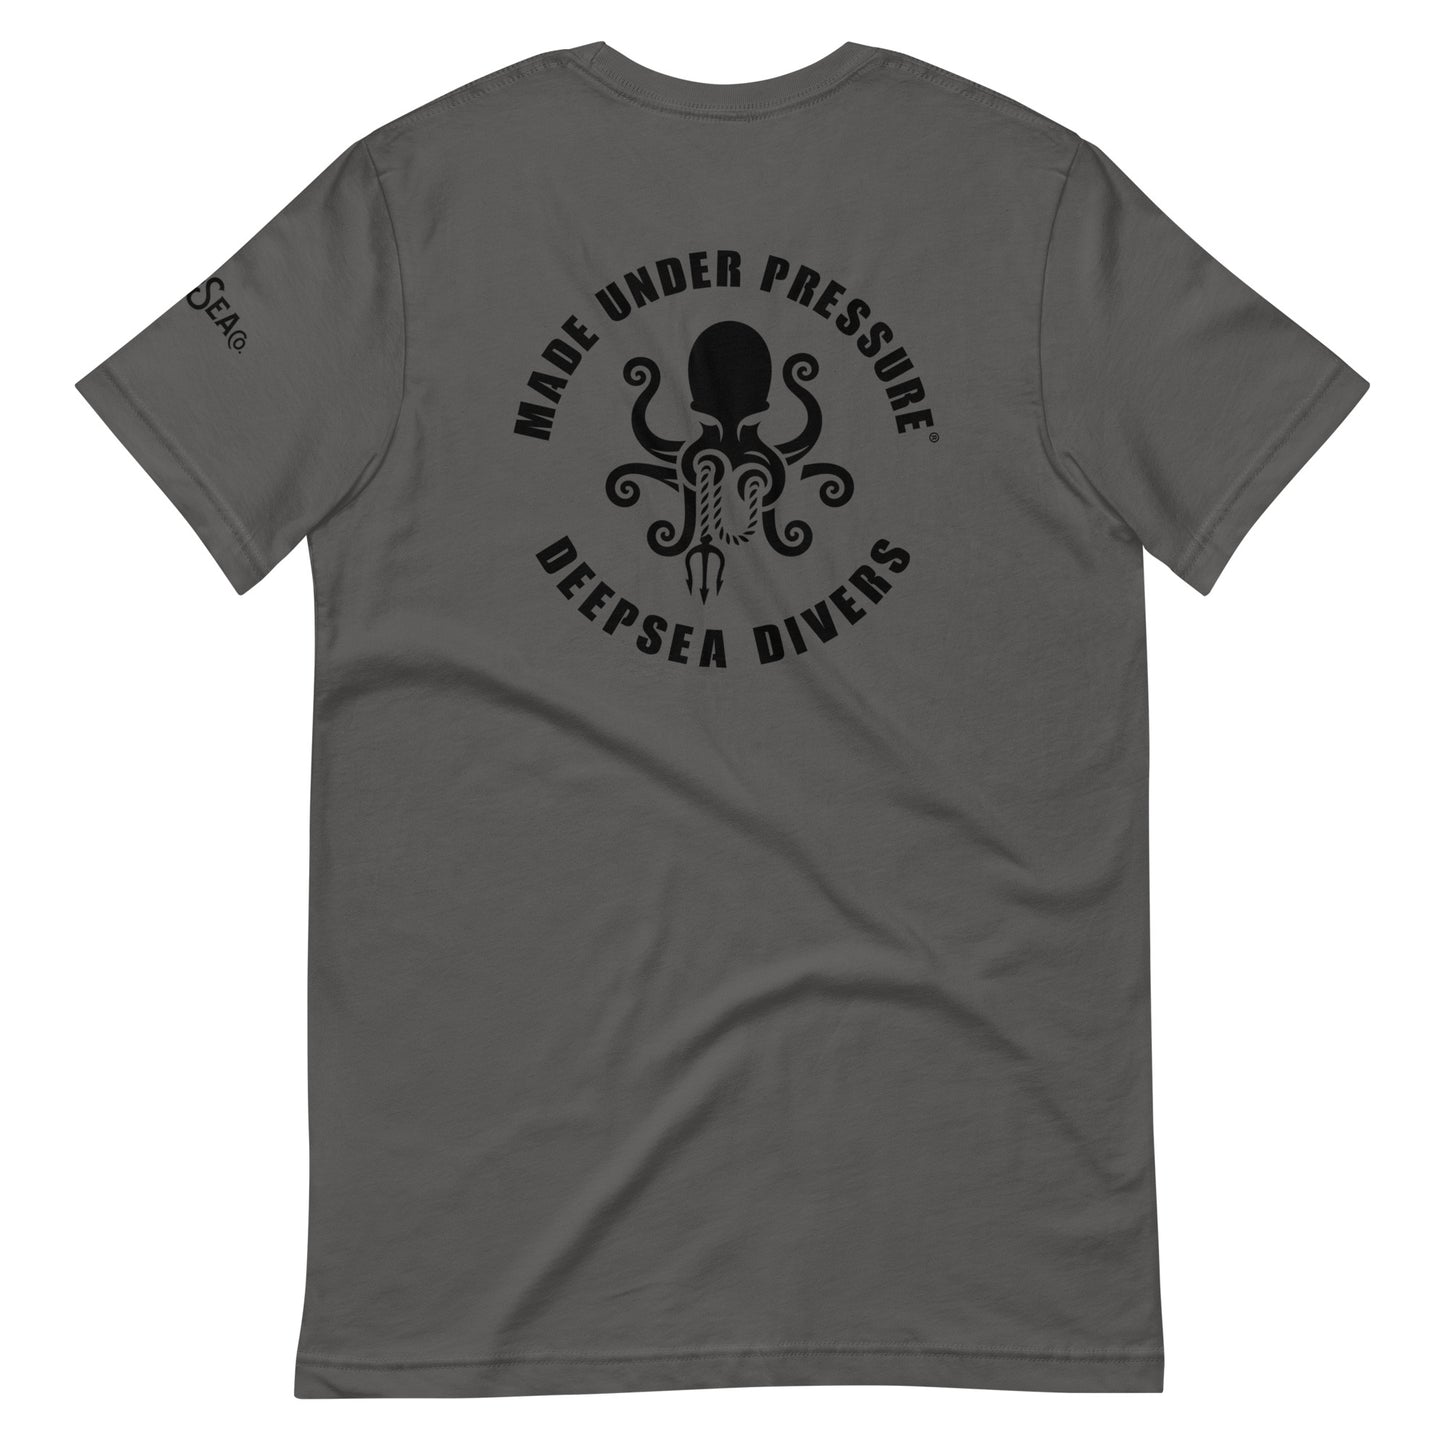 DeepSea Divers Unisex t-shirt